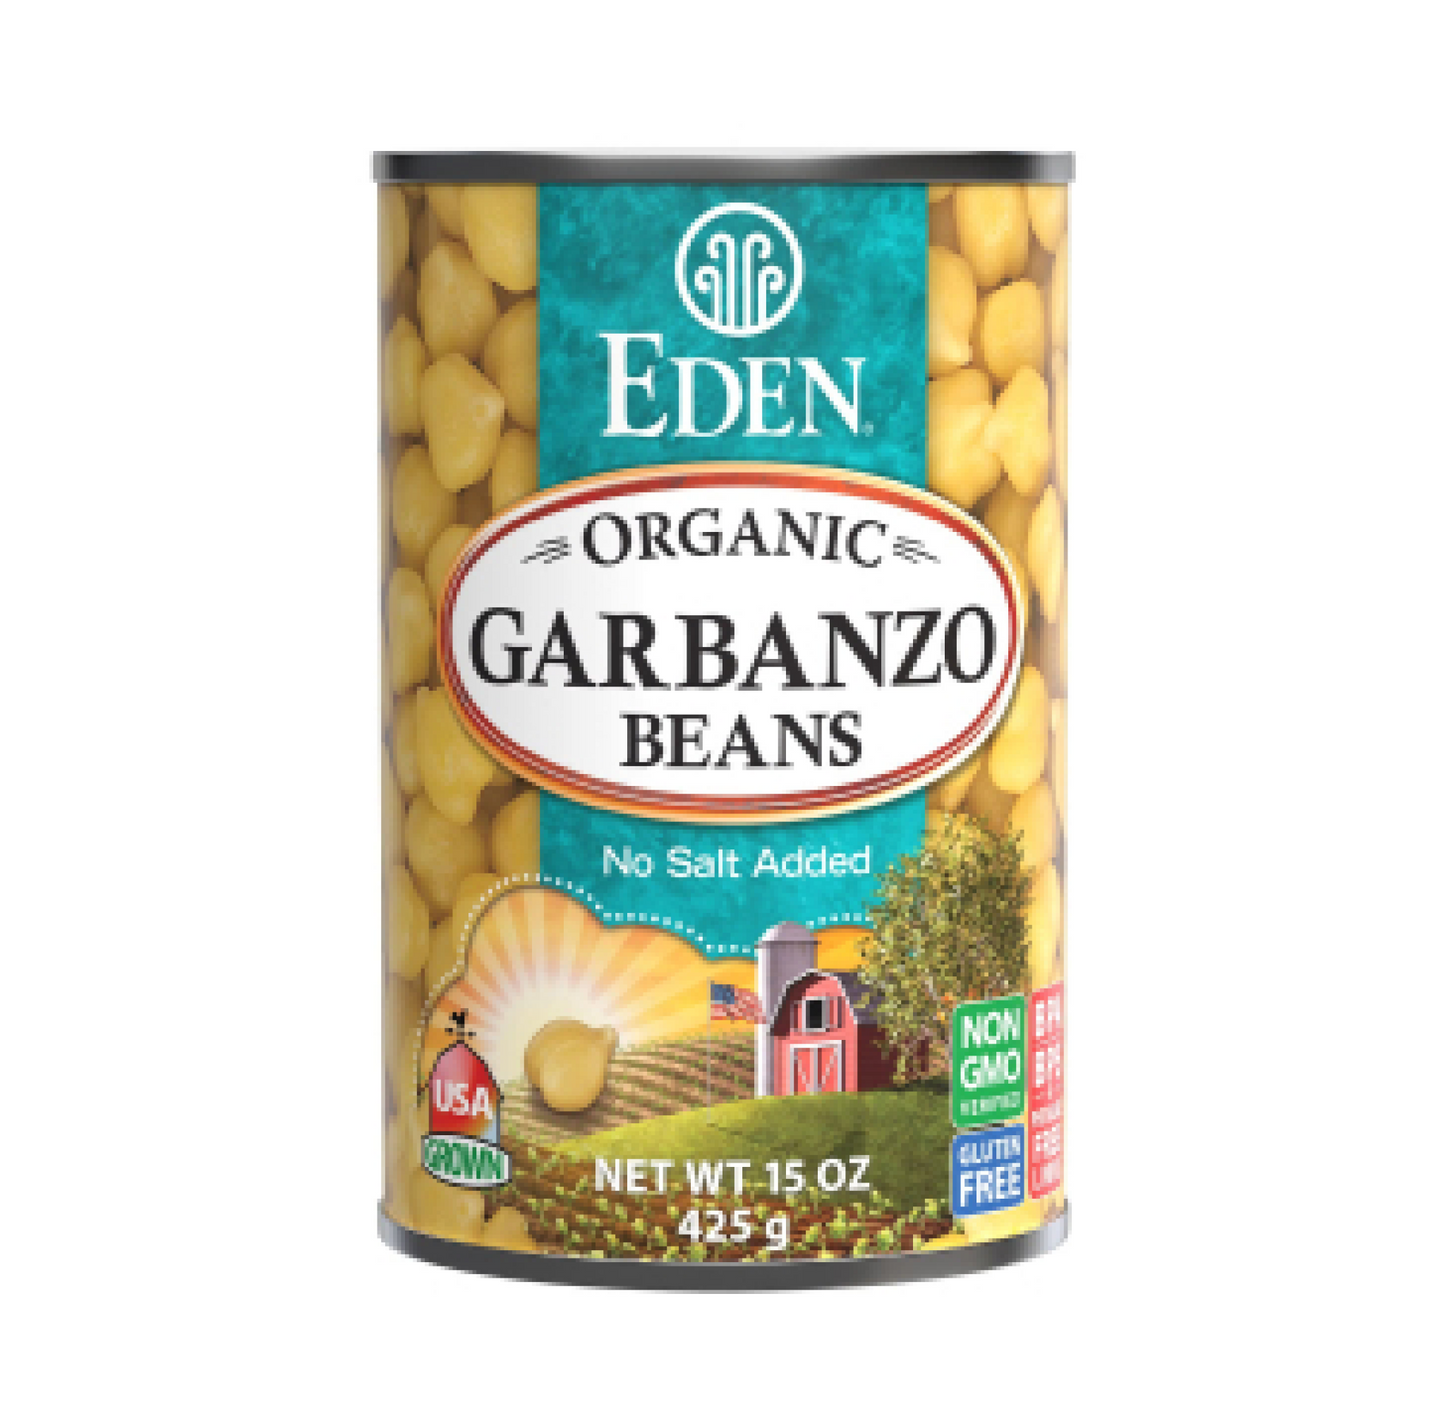 Eden Organic Garbanzo Beans NS 398ml